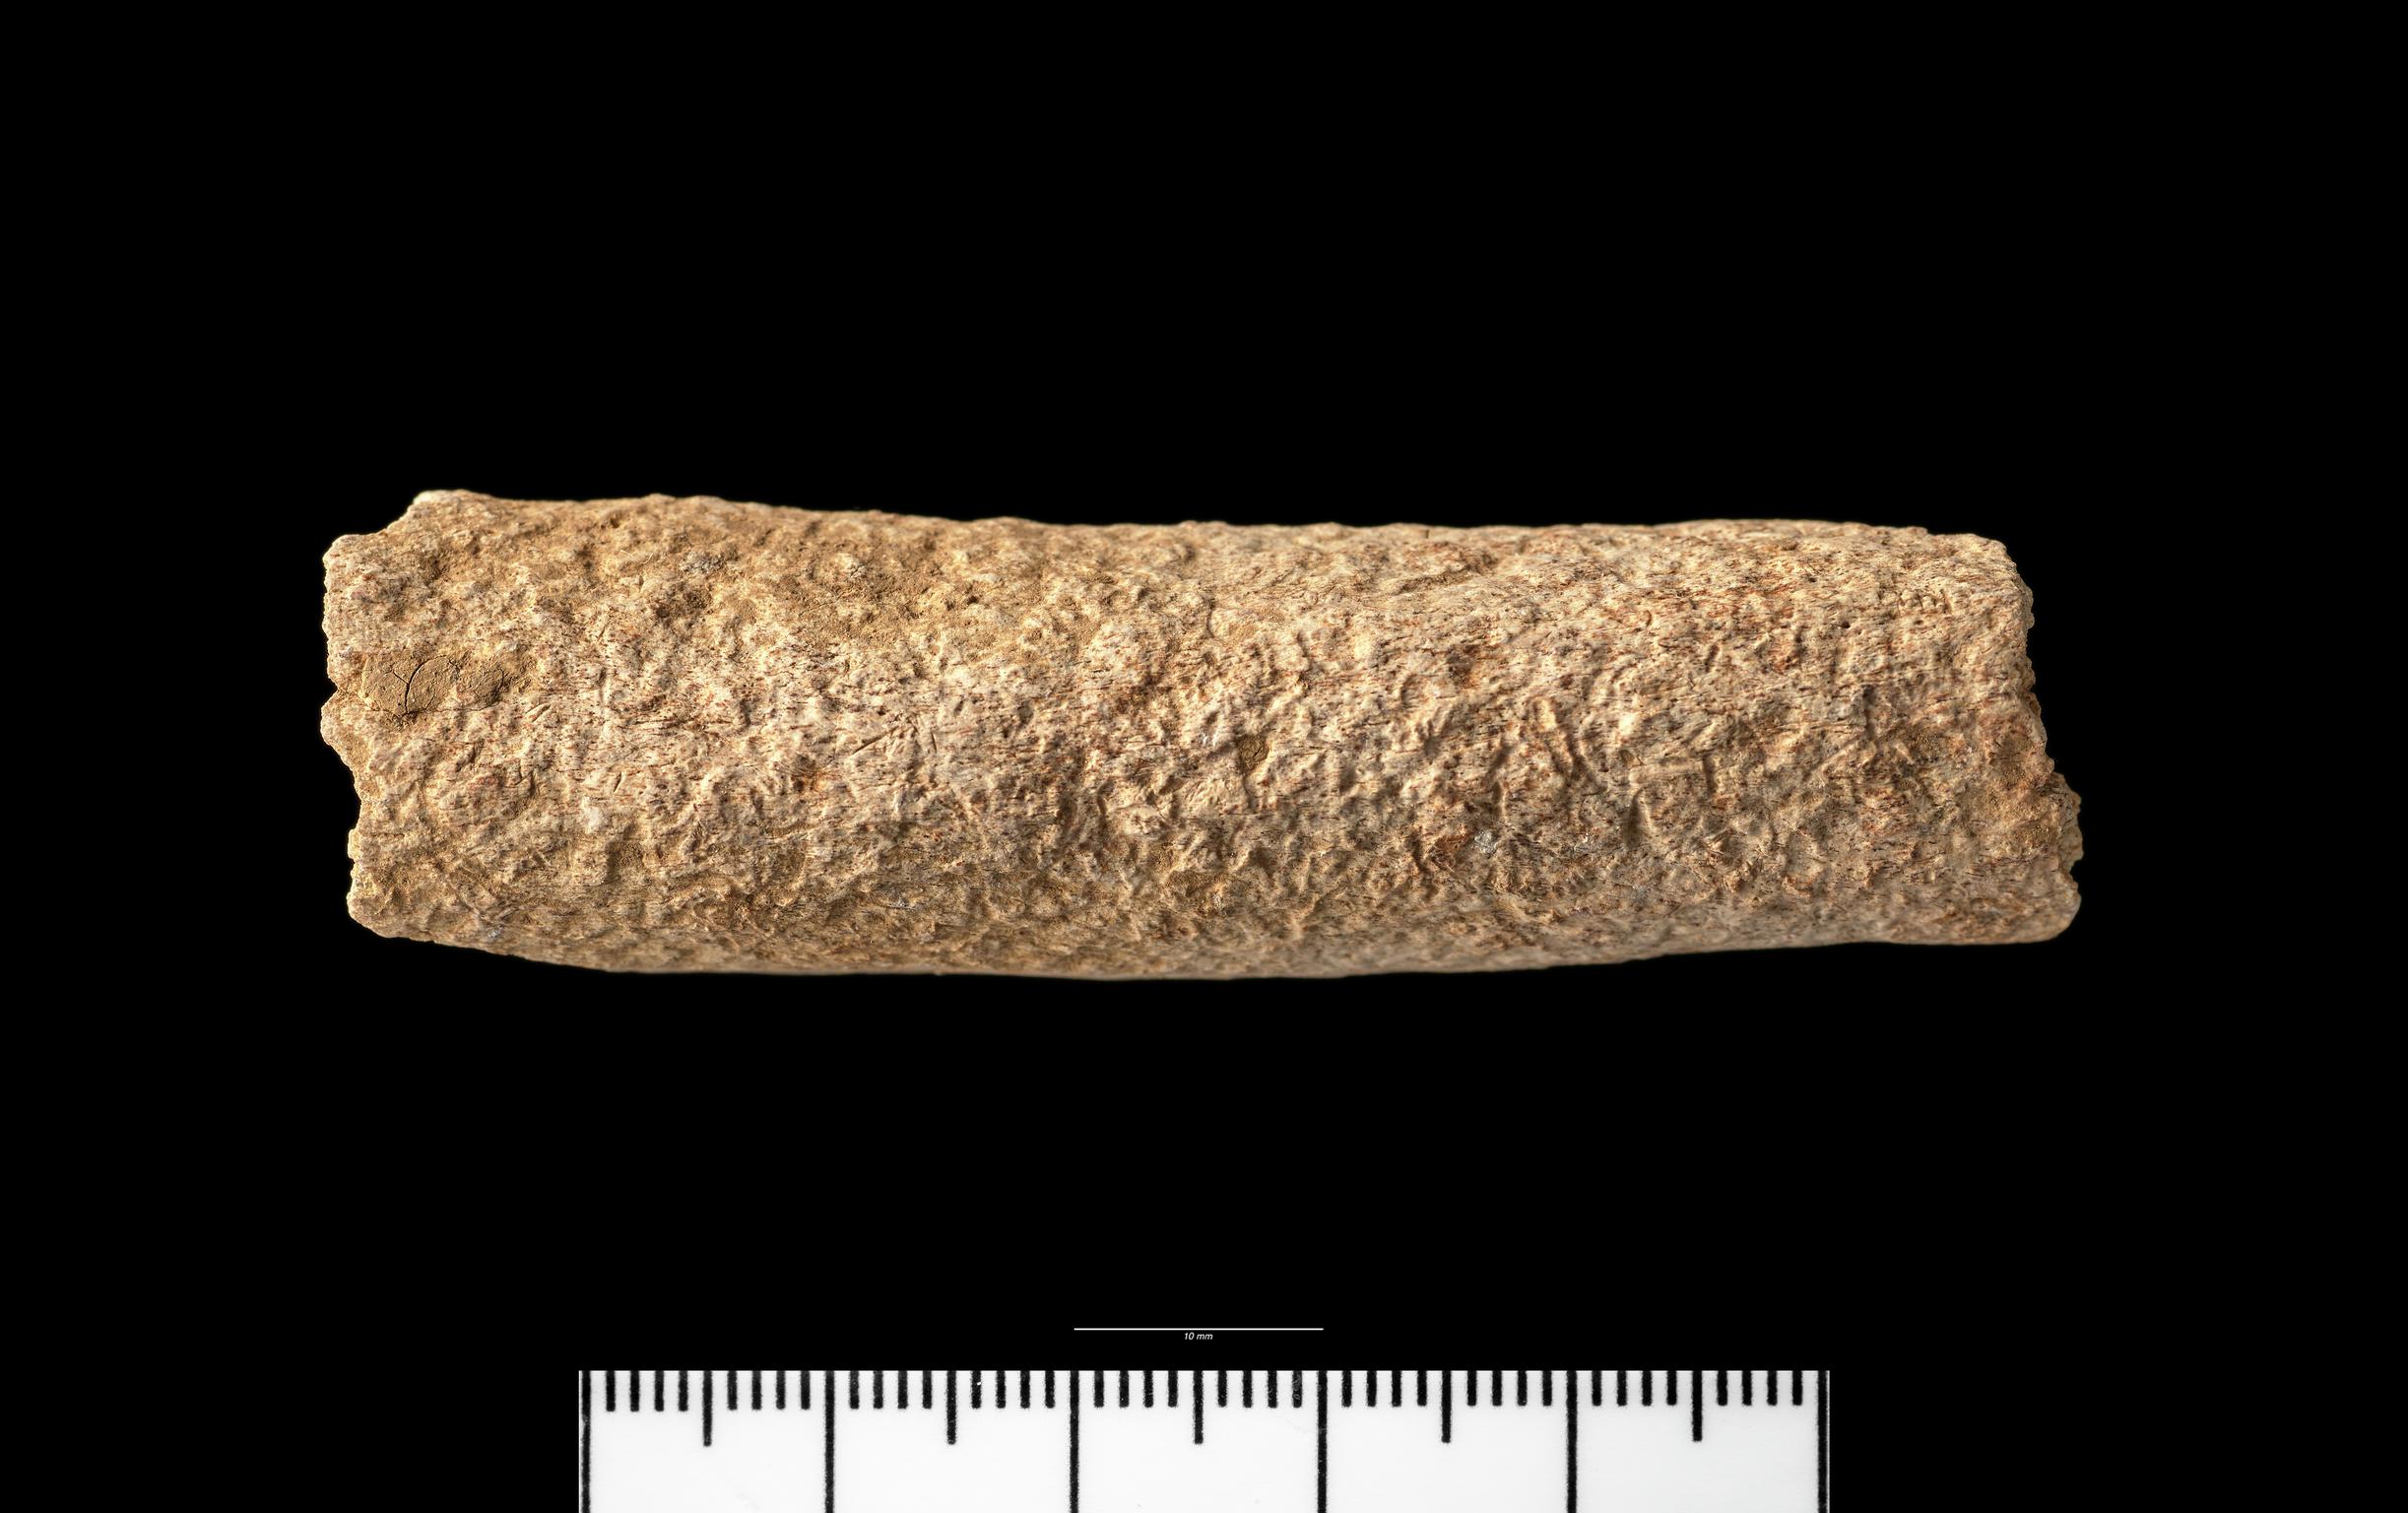 Iron Age human bone